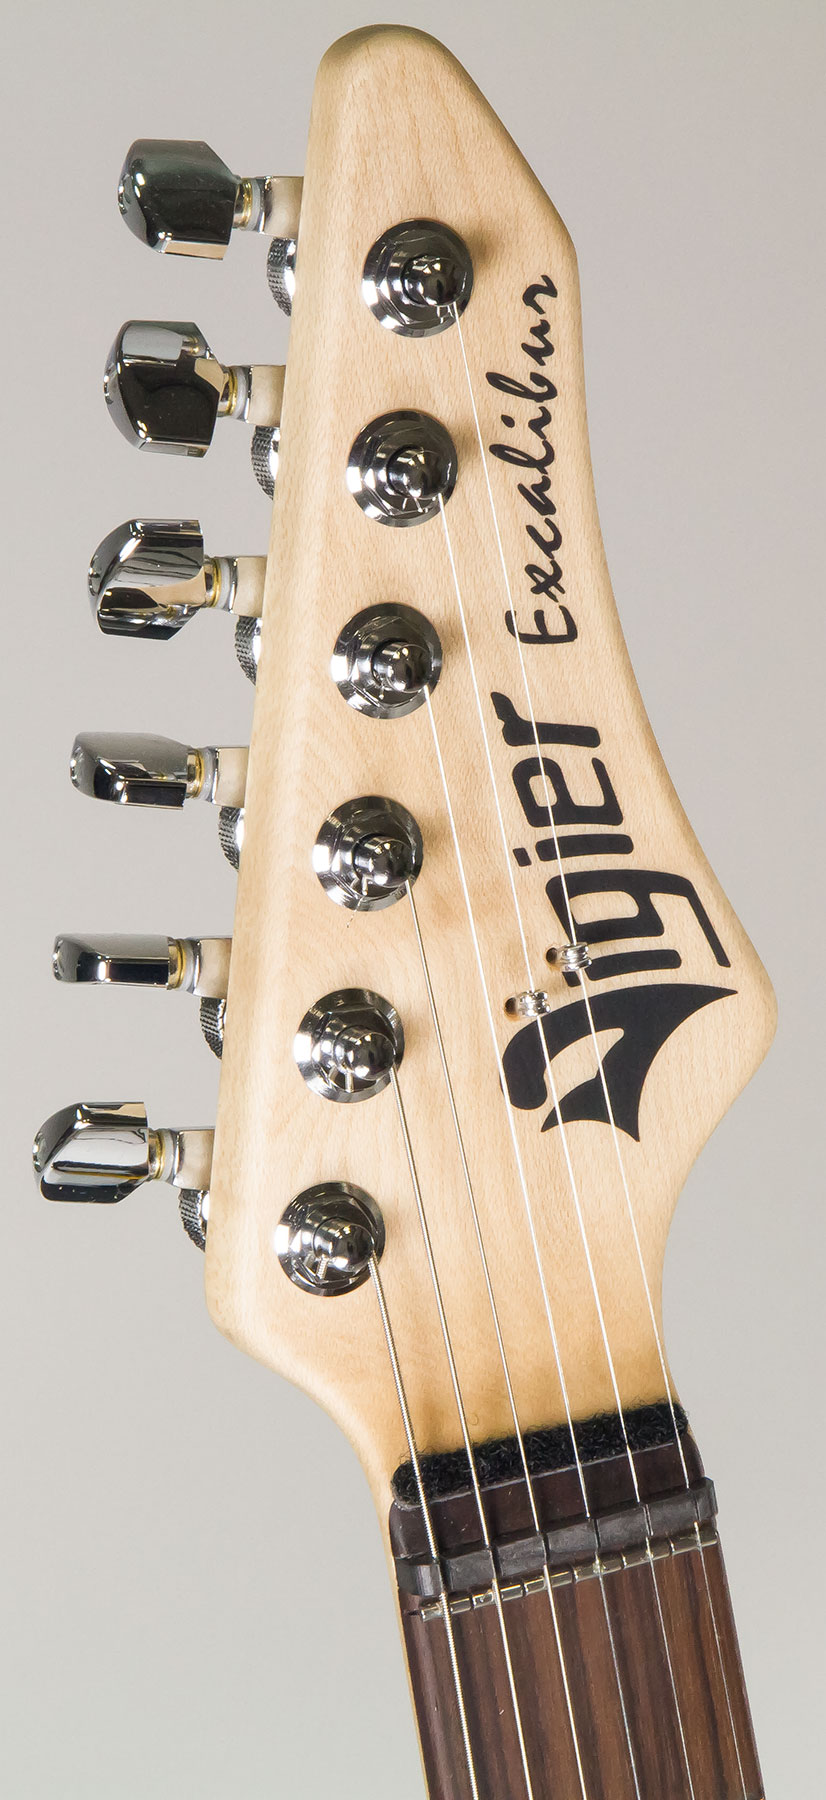 Vigier Excalibur Indus Hh Trem Rw - Textured Black - Double cut electric guitar - Variation 4